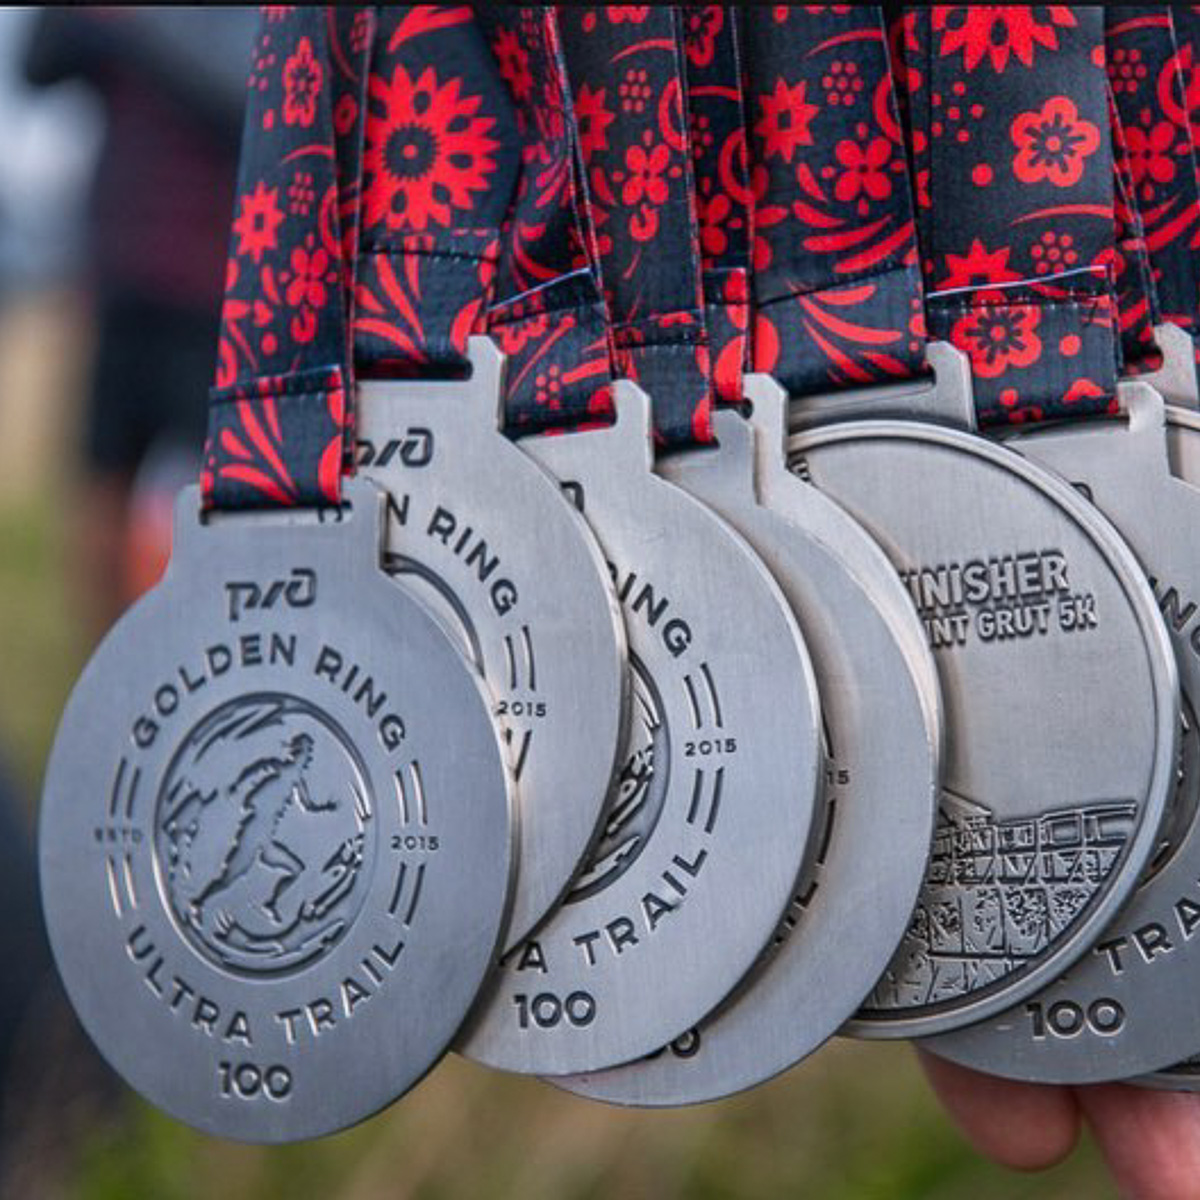 В минувшие выходные в Суздале состоялись масштабные соревнования по бегу - Golden Ring Ultra Trail 2020. Участники поделились впечатлениями